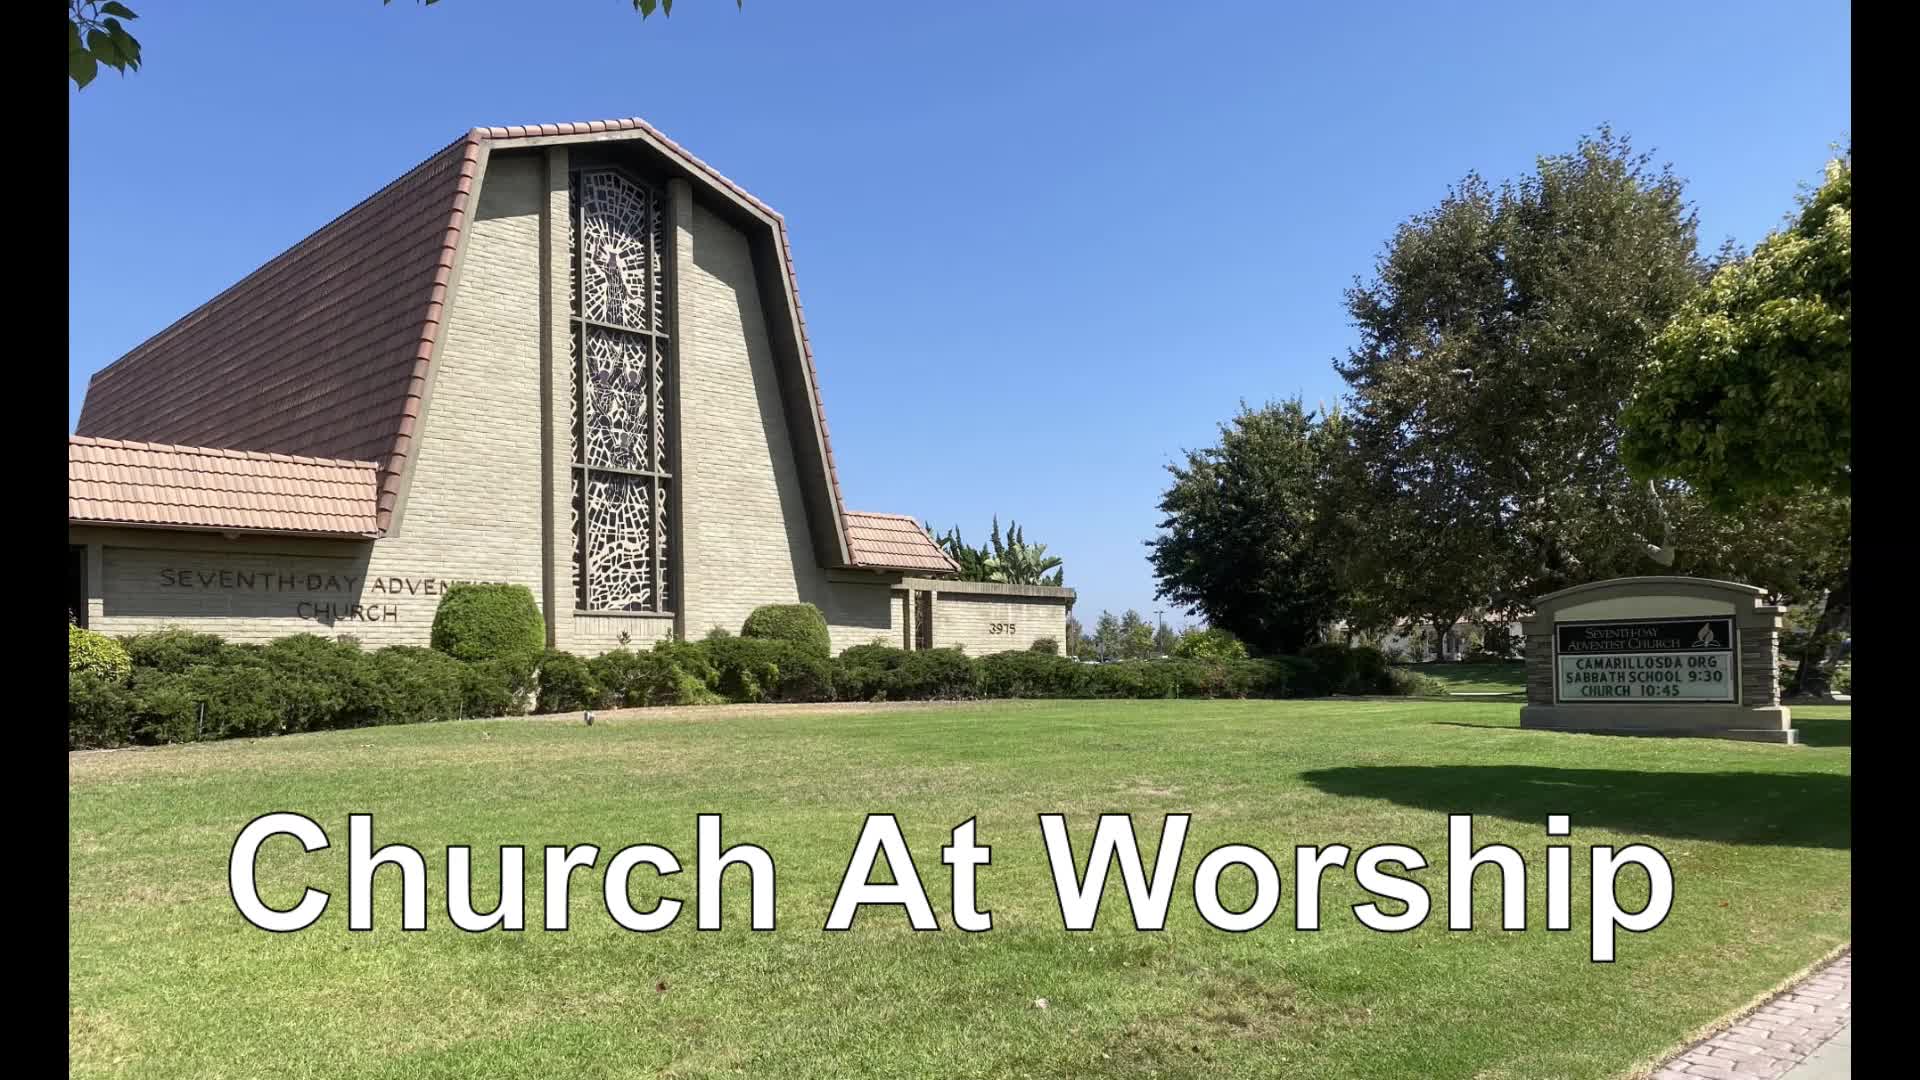  1/30/2021 Church At Worship